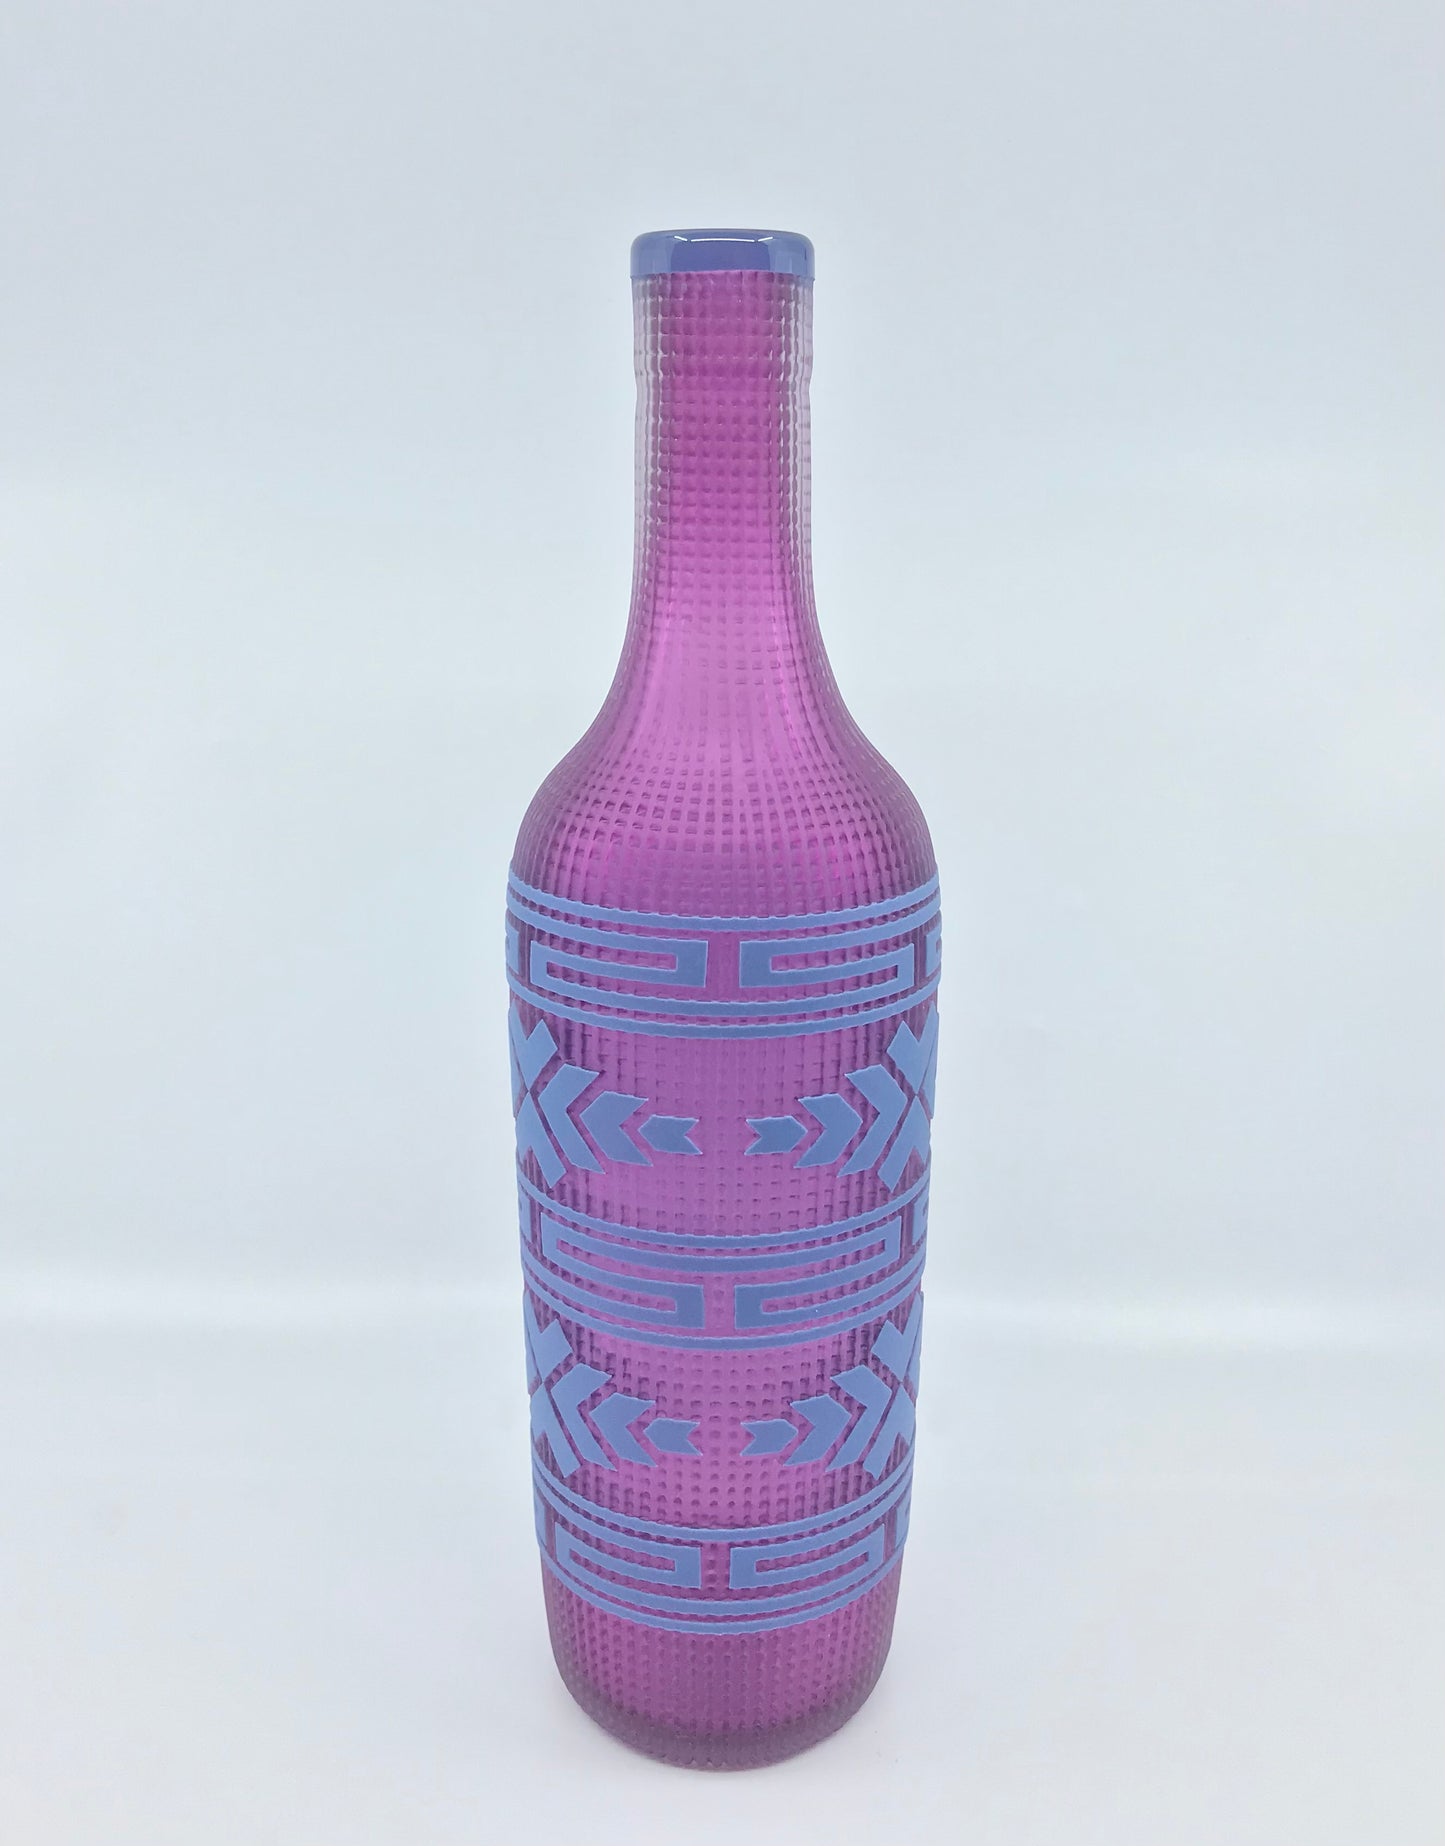 (C) Glass Sculpture - Singletary; "Bottle, Purple", 13" x 3"